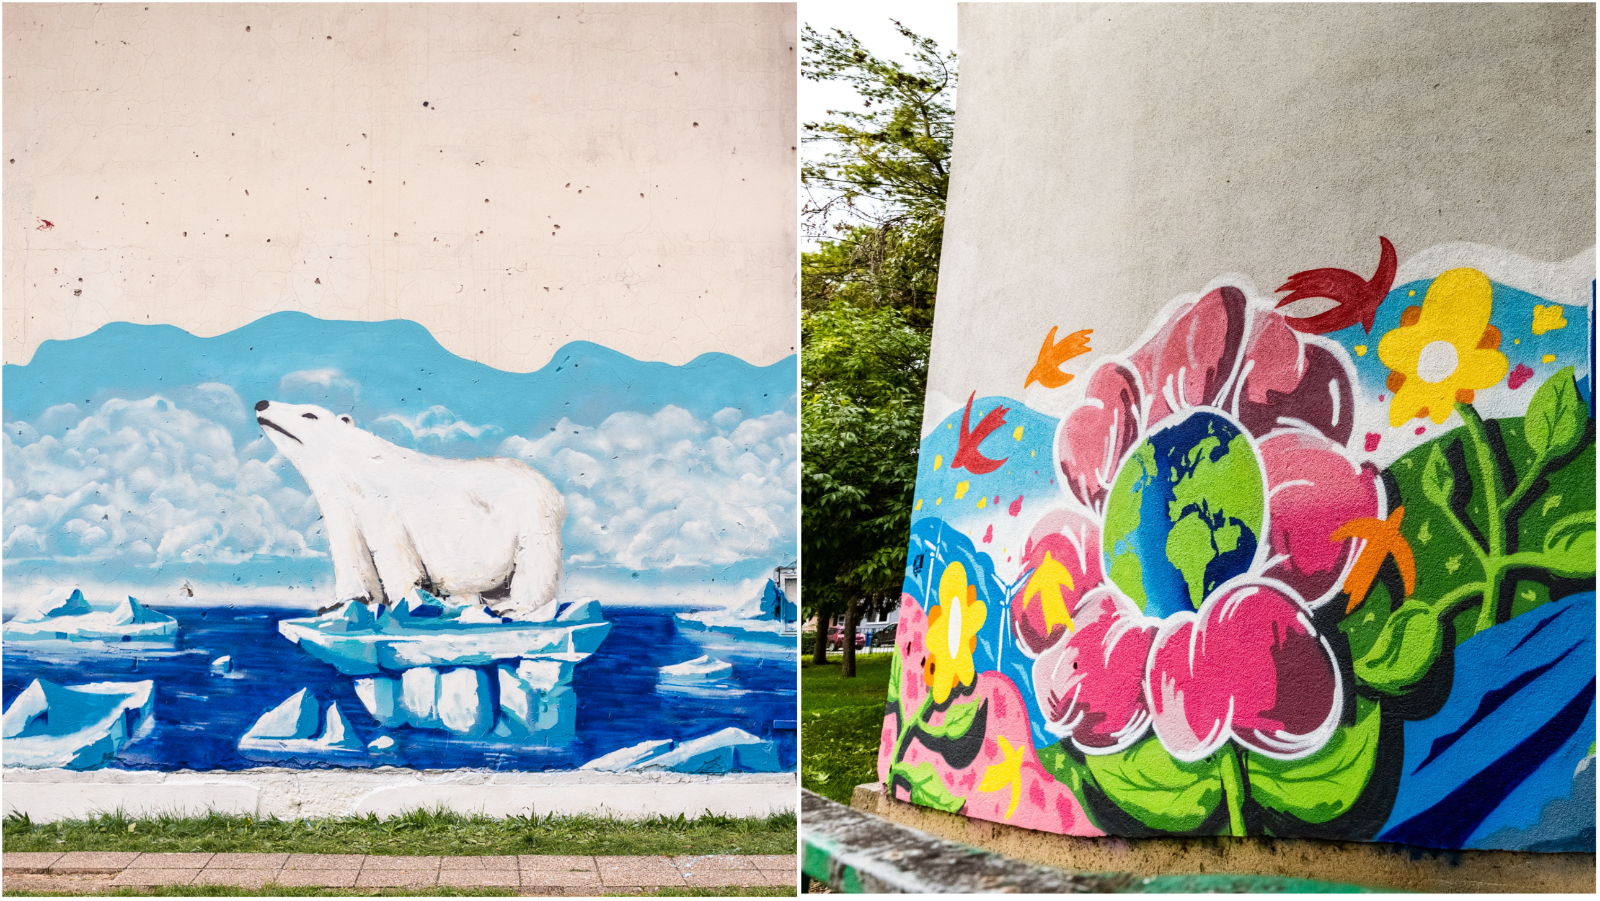 Murali koji ukazuju na klimatske promjene sada krase fasade diljem Hrvatske